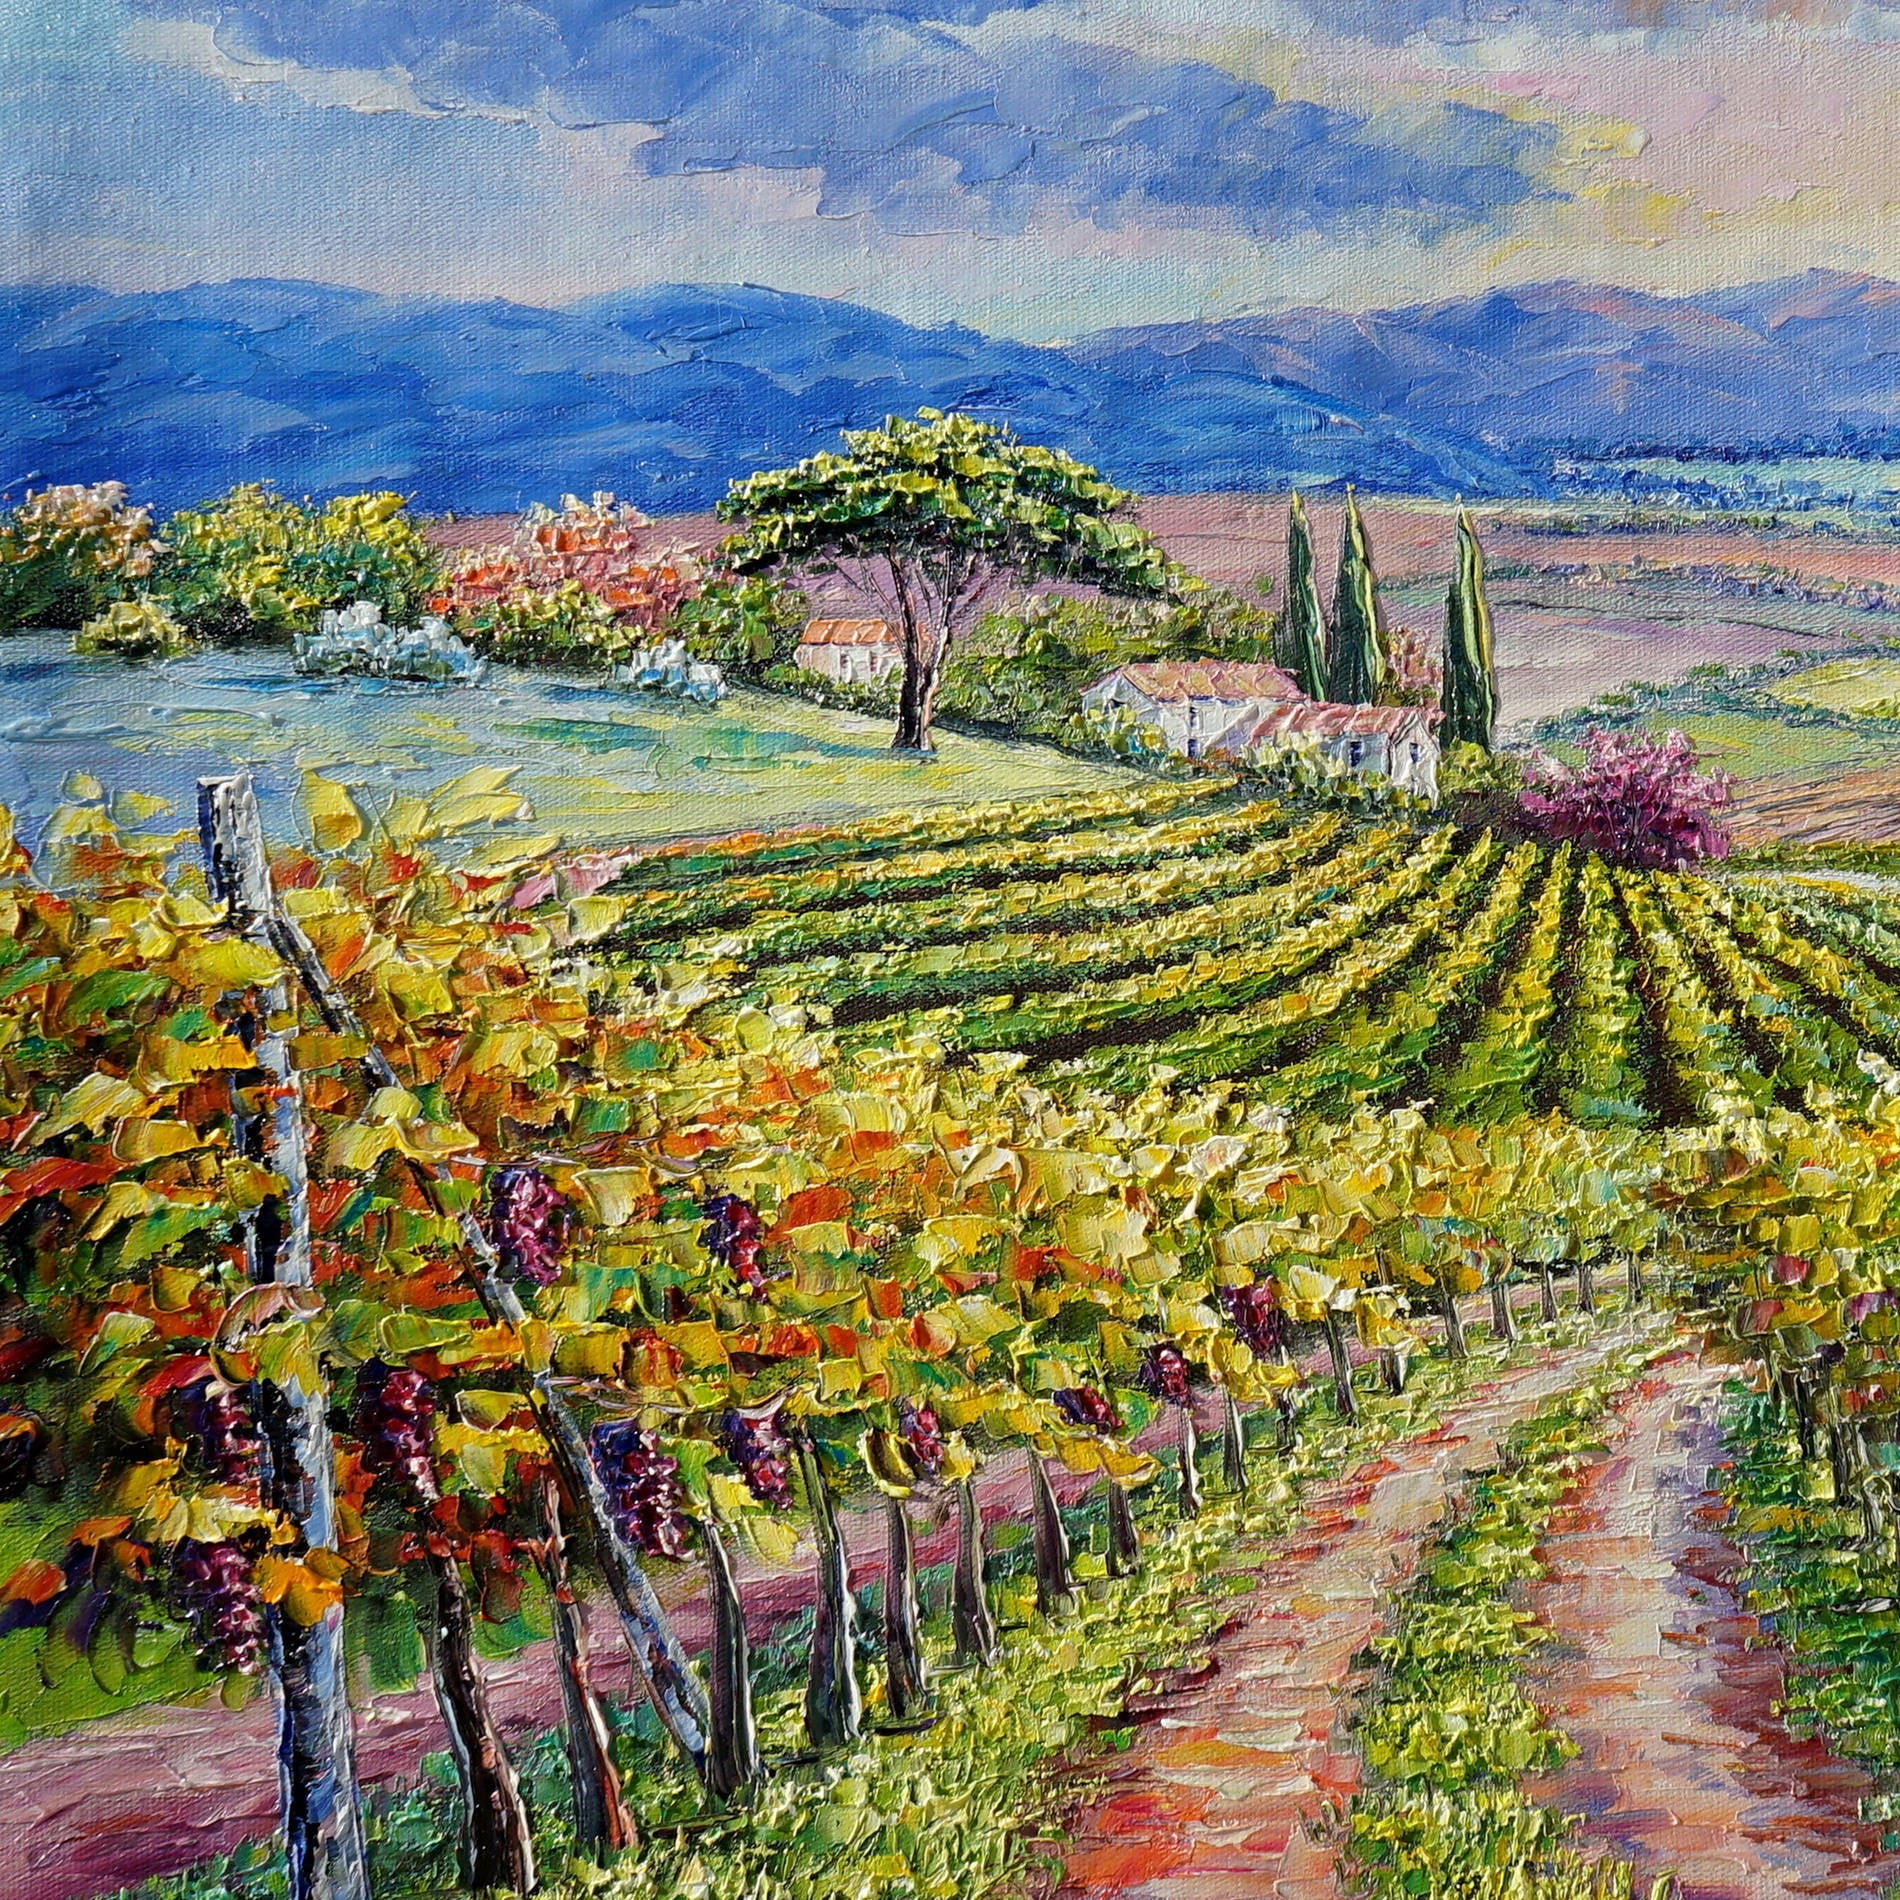 Quadro di un paesaggio con vigne e un sentiero